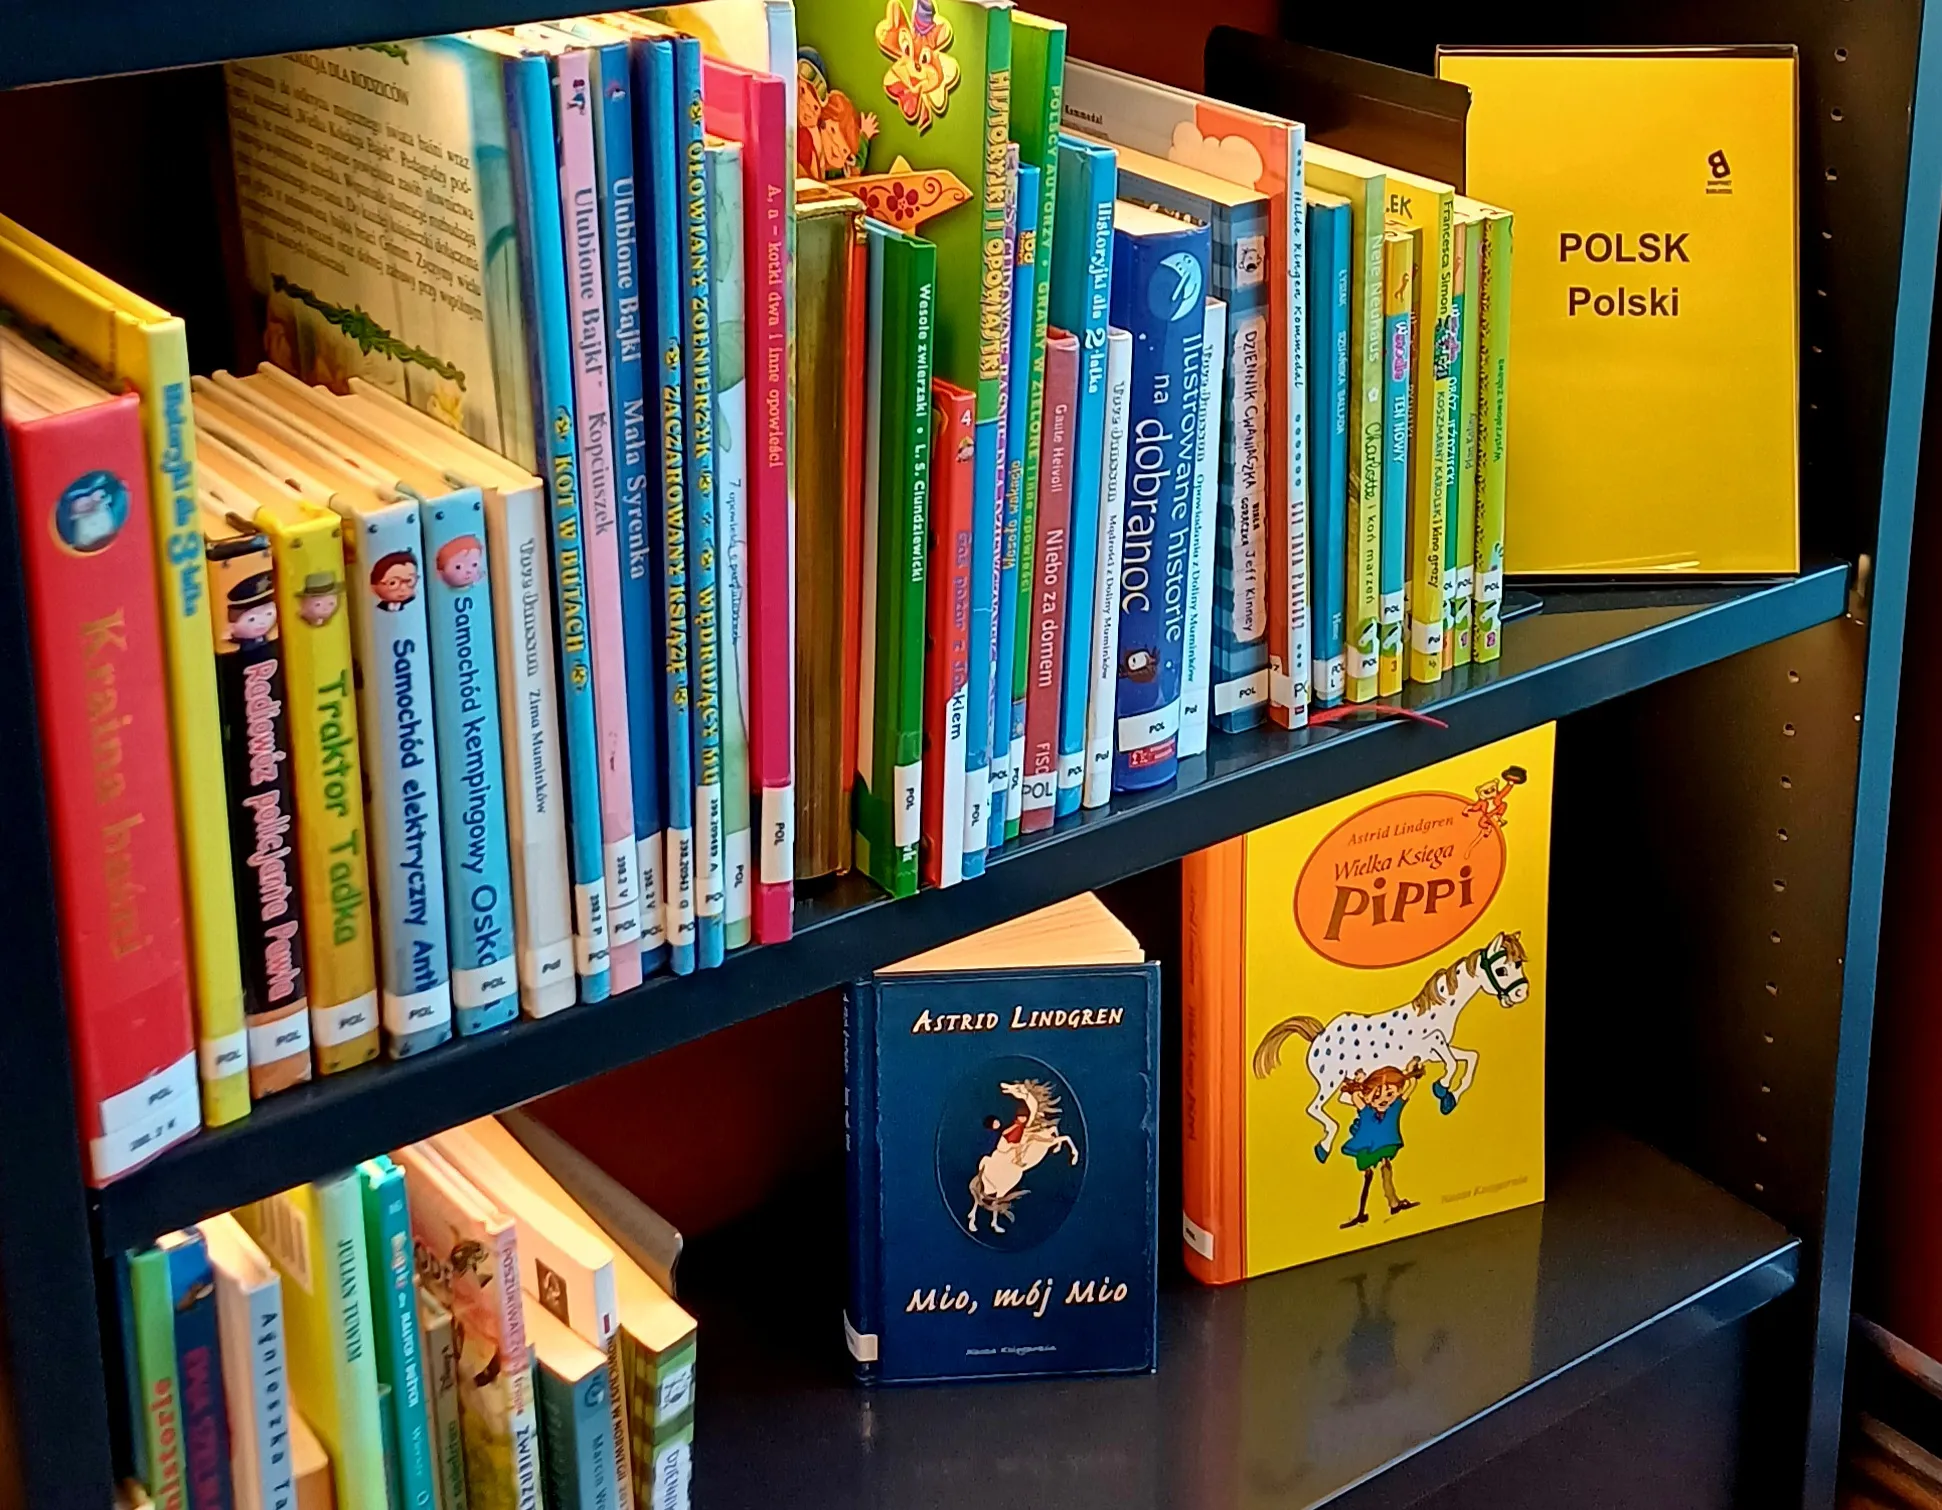 Bücher auf Polnisch in der norwegischen Bibliothek: Eine mehrsprachige Bibliothek für jedermann